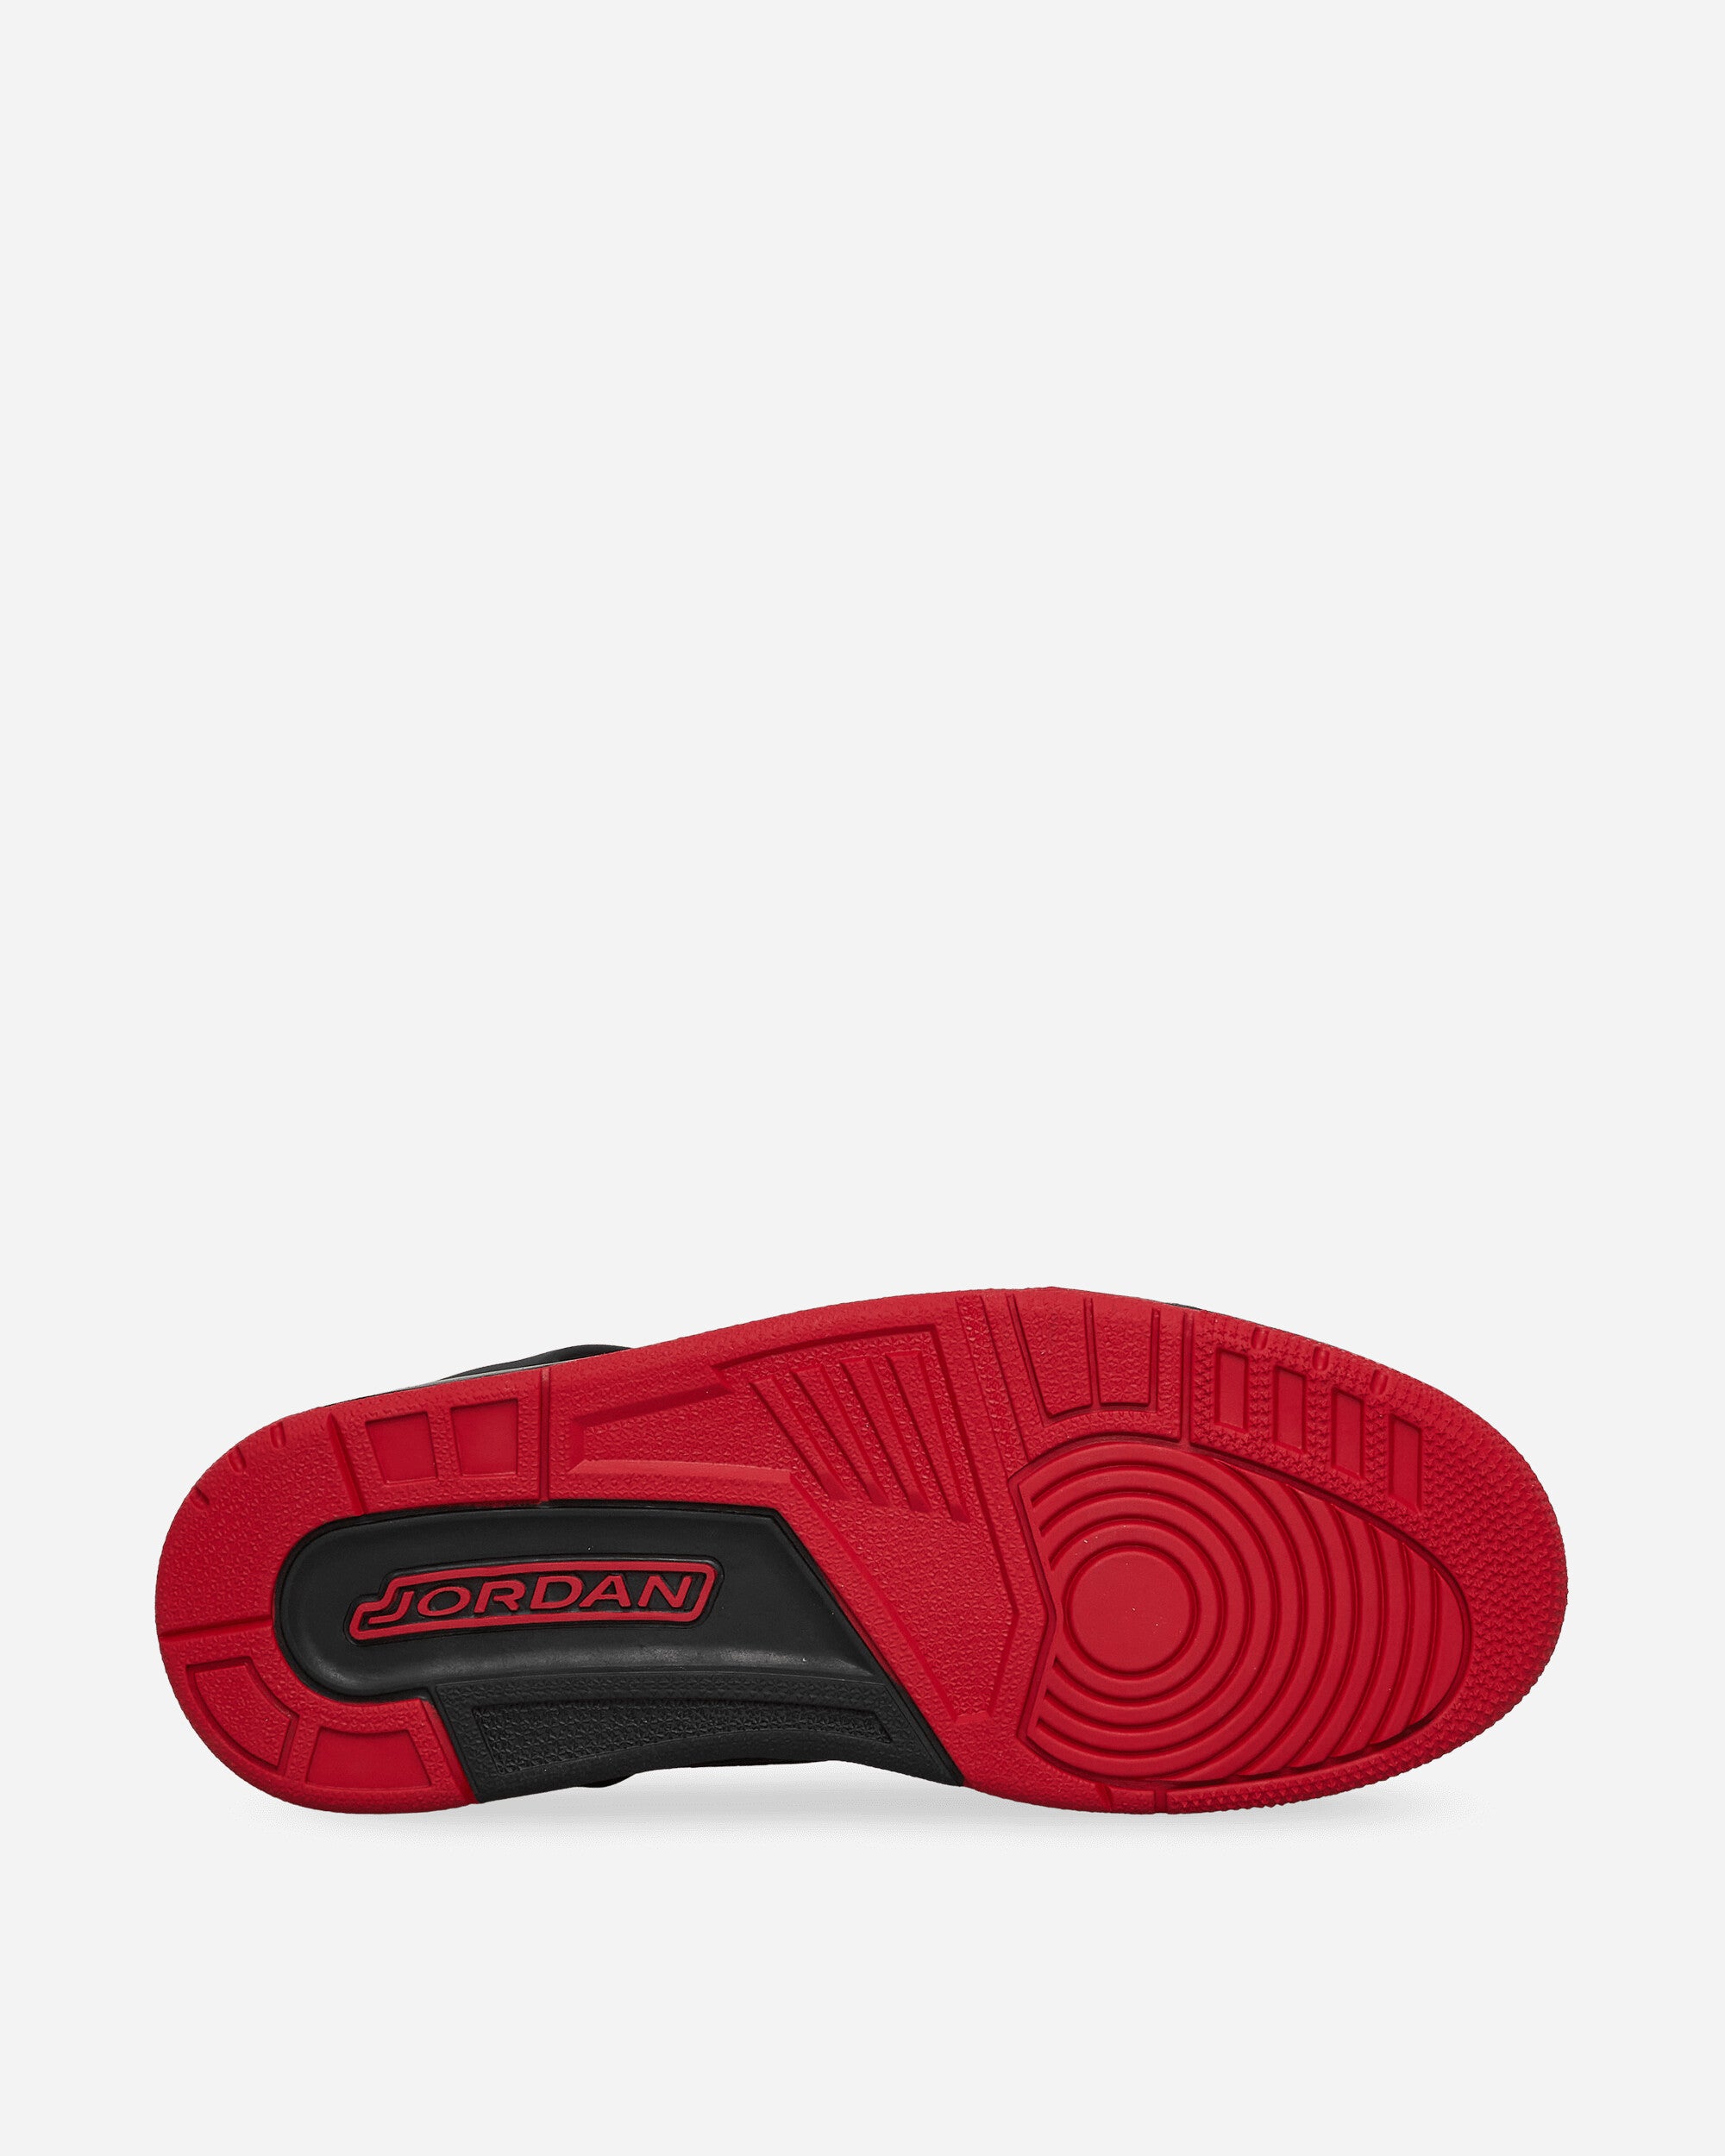 Nike Jordan Jordan Spizike Low Black/Gym Red Sneakers Low FQ1759-006